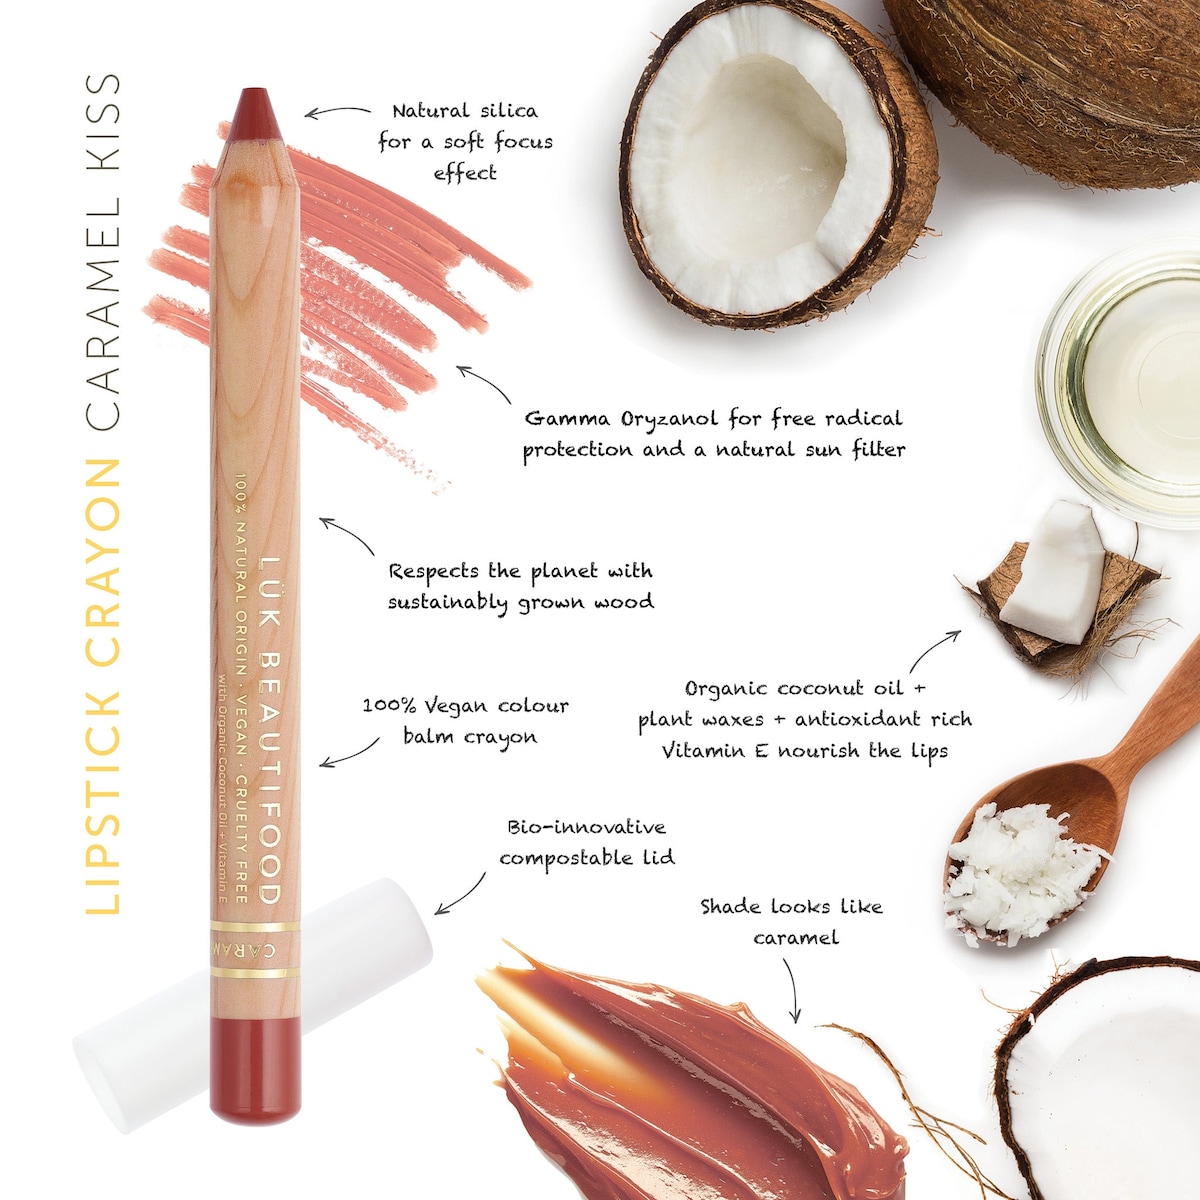 Luk Beautifood Lipstick Crayon Caramel Kiss 3g